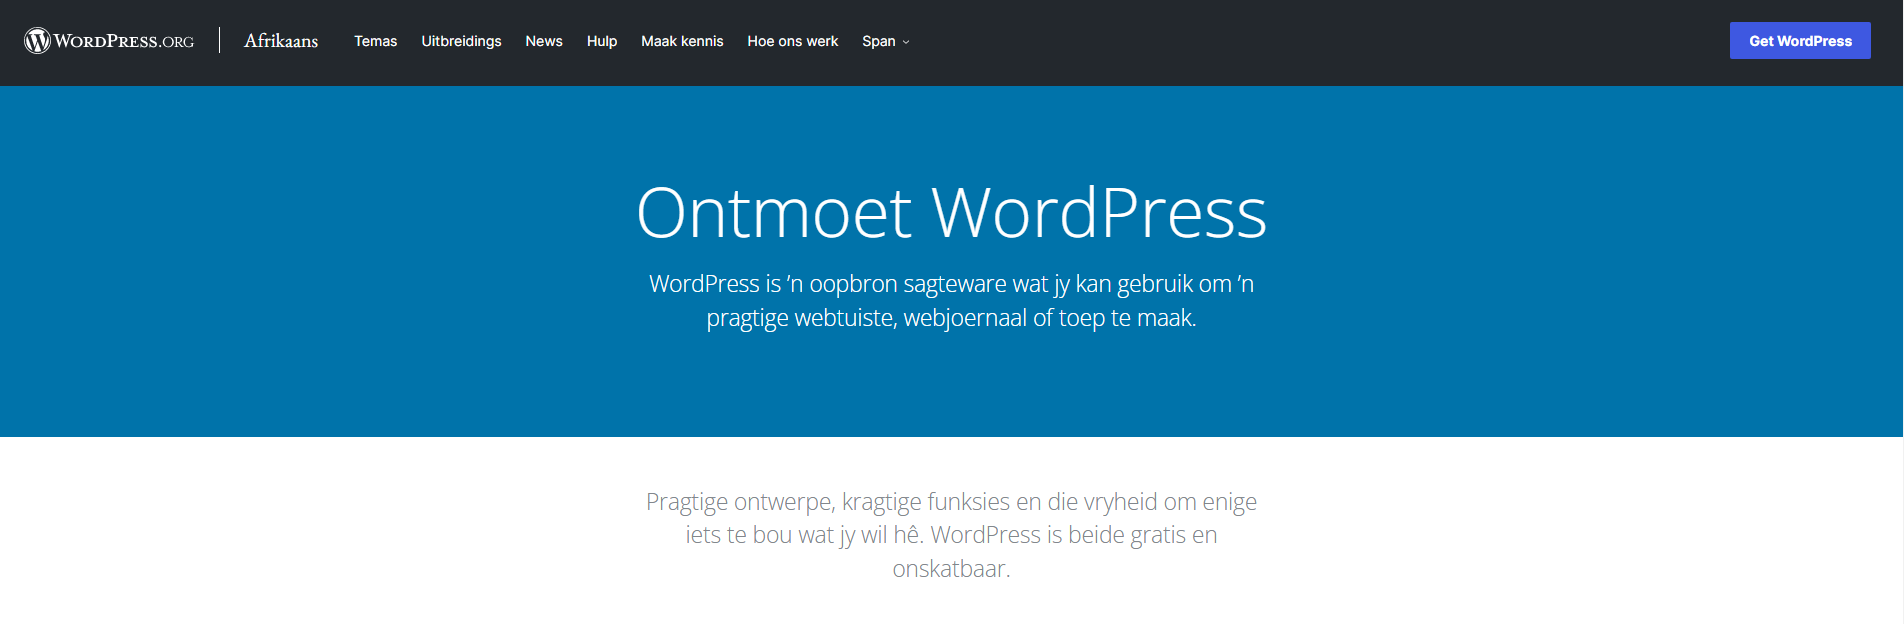 Afrikaans Header Displaying Ontmoet WordPress